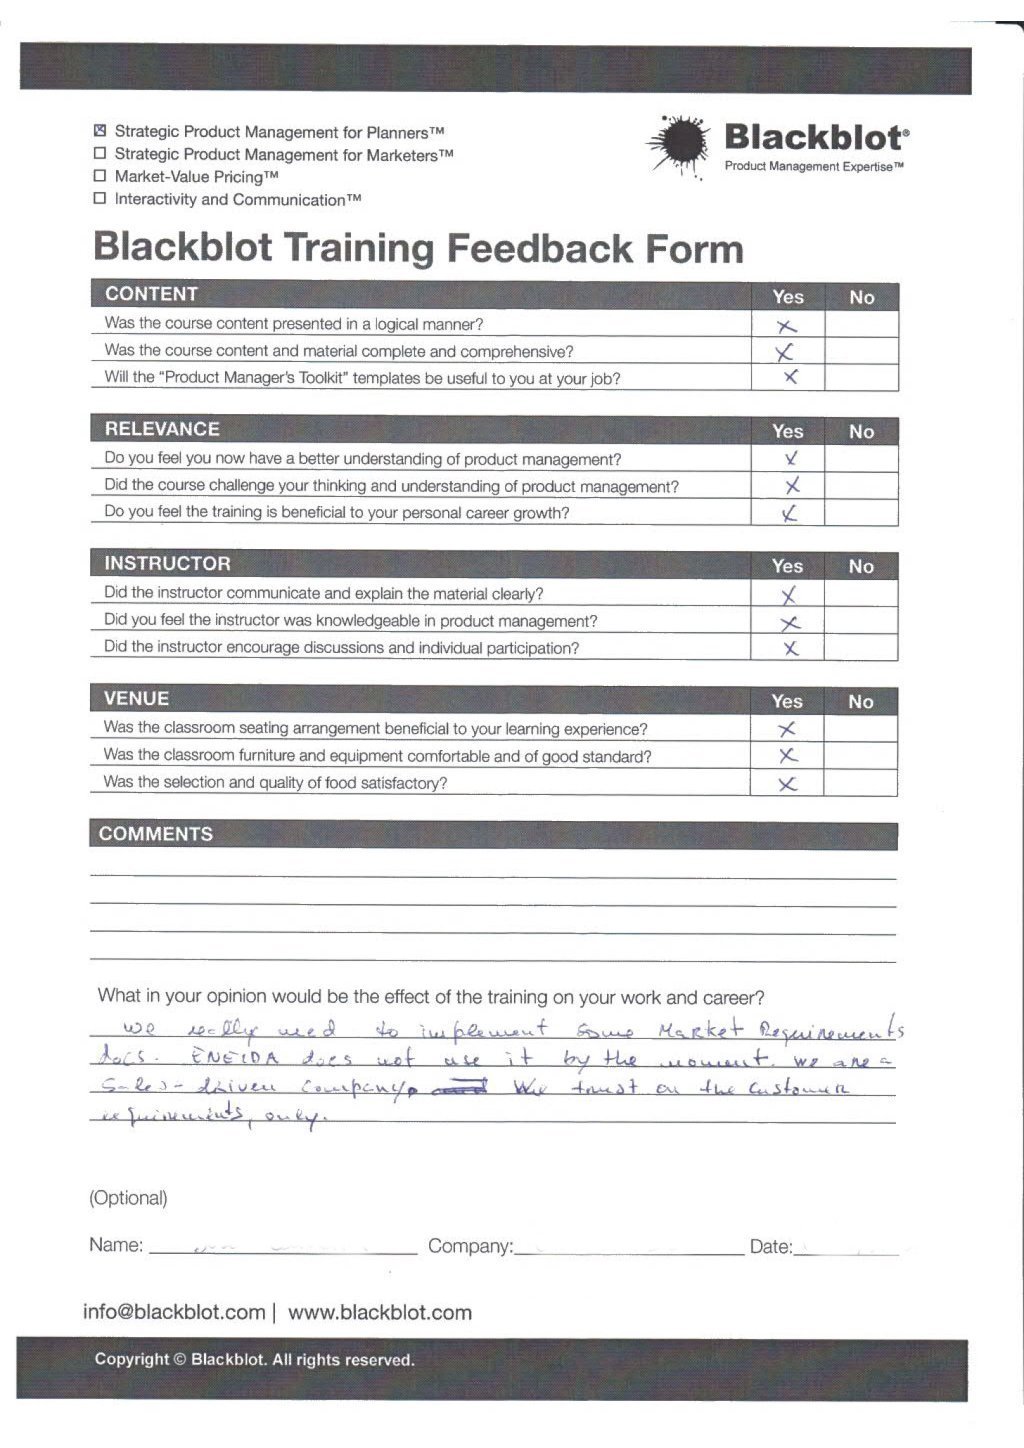 Blackblot: Blackblot_Strategic_Product_Management_Feedback_Form_017.jpg